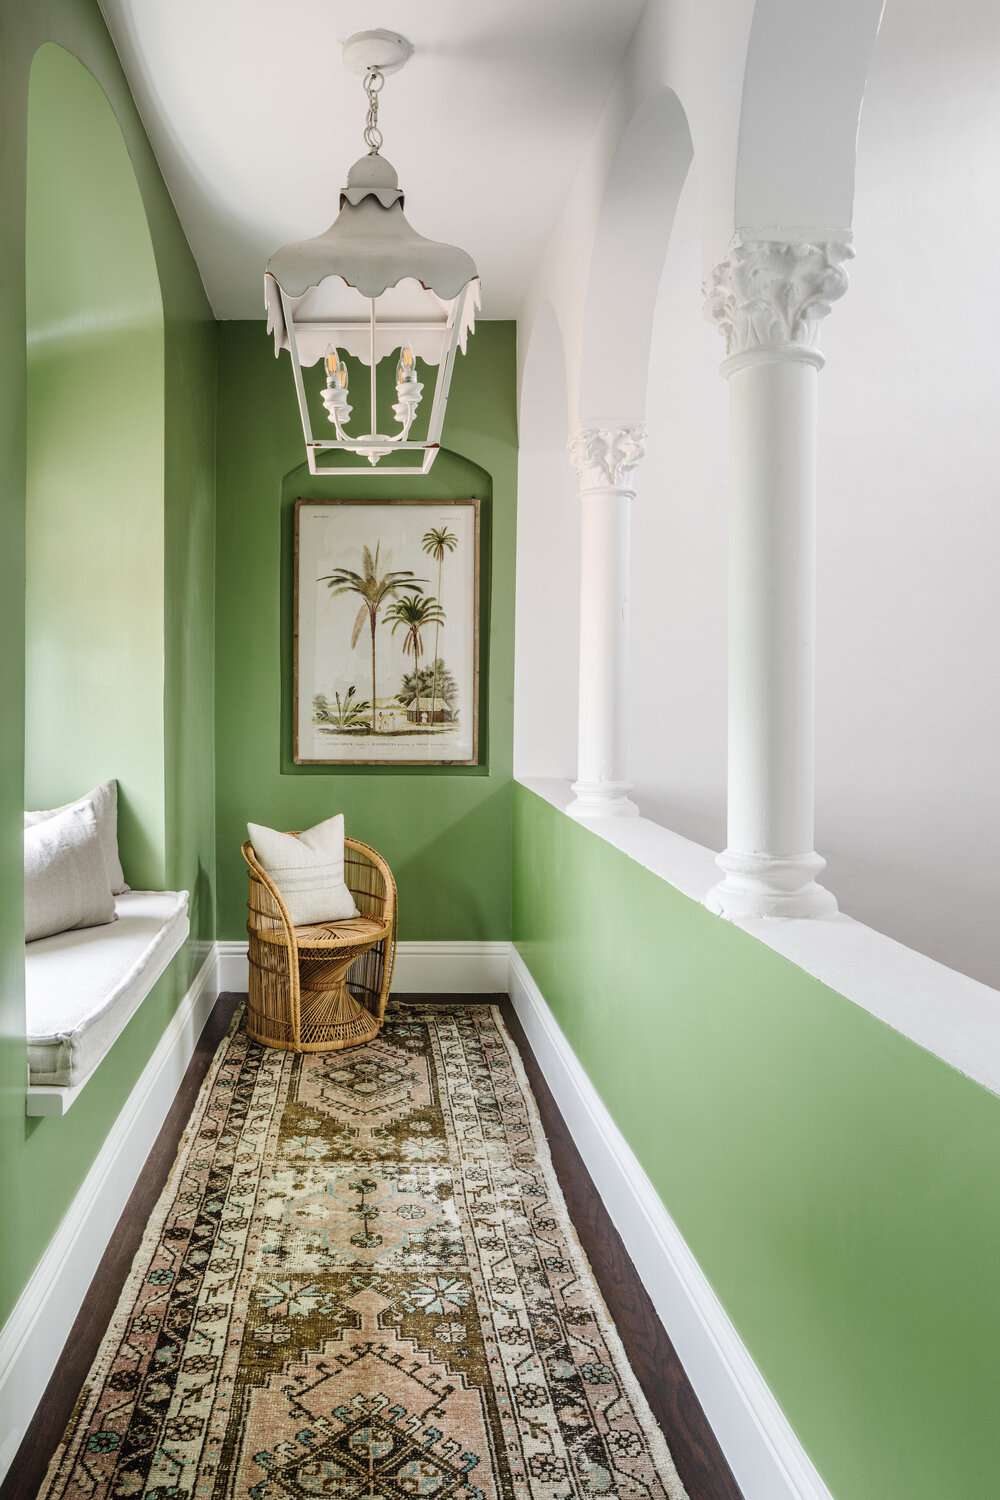 Corredor verde com um assento na janela e uma luminária pendente branca ornamentada